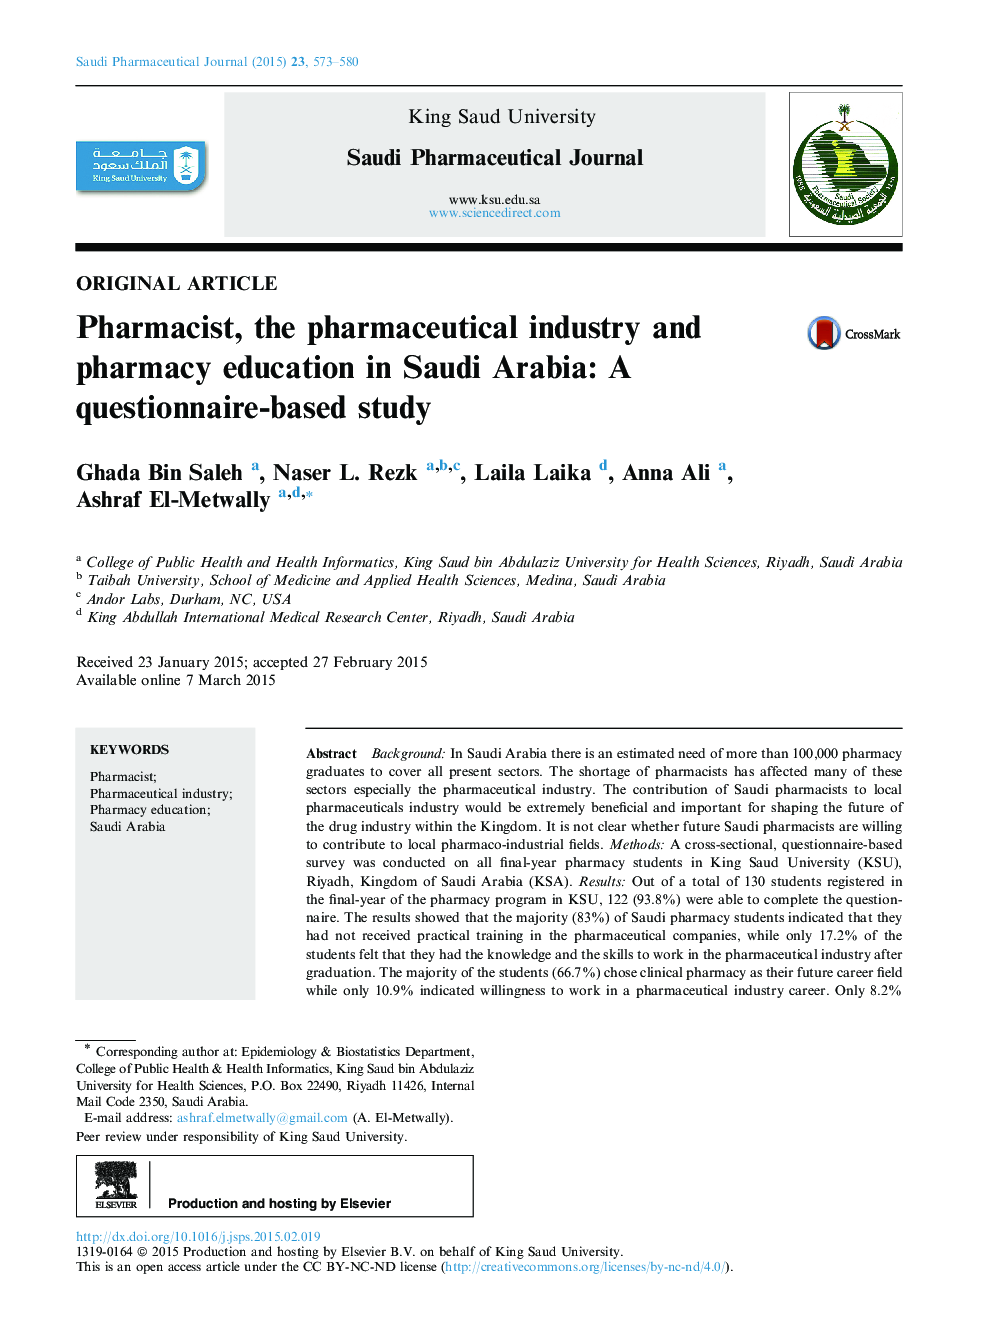 داروساز، صنایع داروسازی و آموزش داروسازی در عربستان سعودی: یک مطالعه مبتنی بر پرسشنامه است 